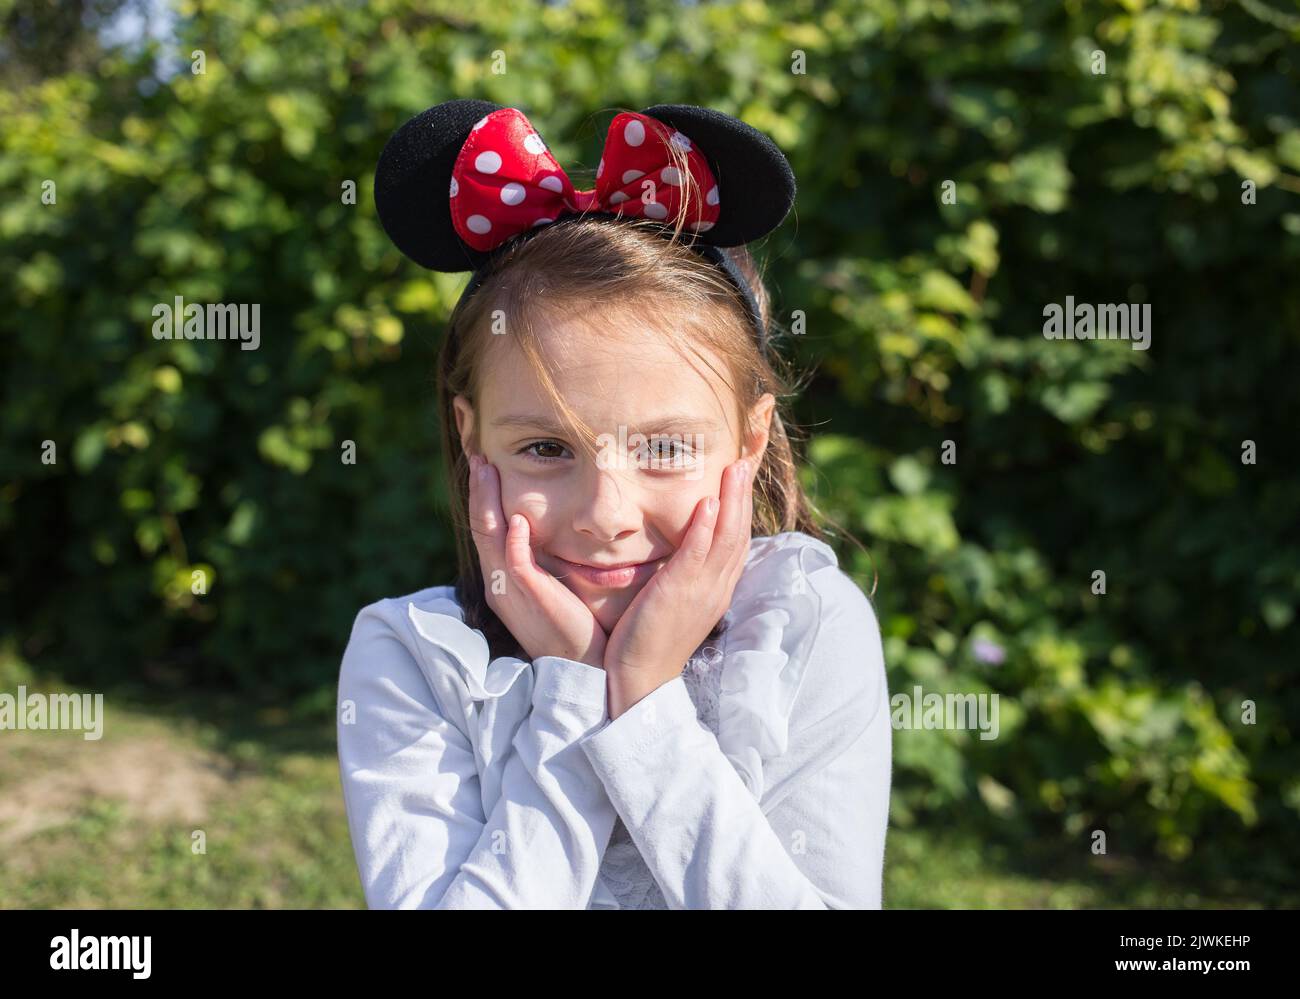 Schönes Mädchen 6-7 Jahre alt mit Mausohren auf dem Kopf. Festliche Stimmung, Geburtstag, positive, fröhliche Kindheit Stockfoto